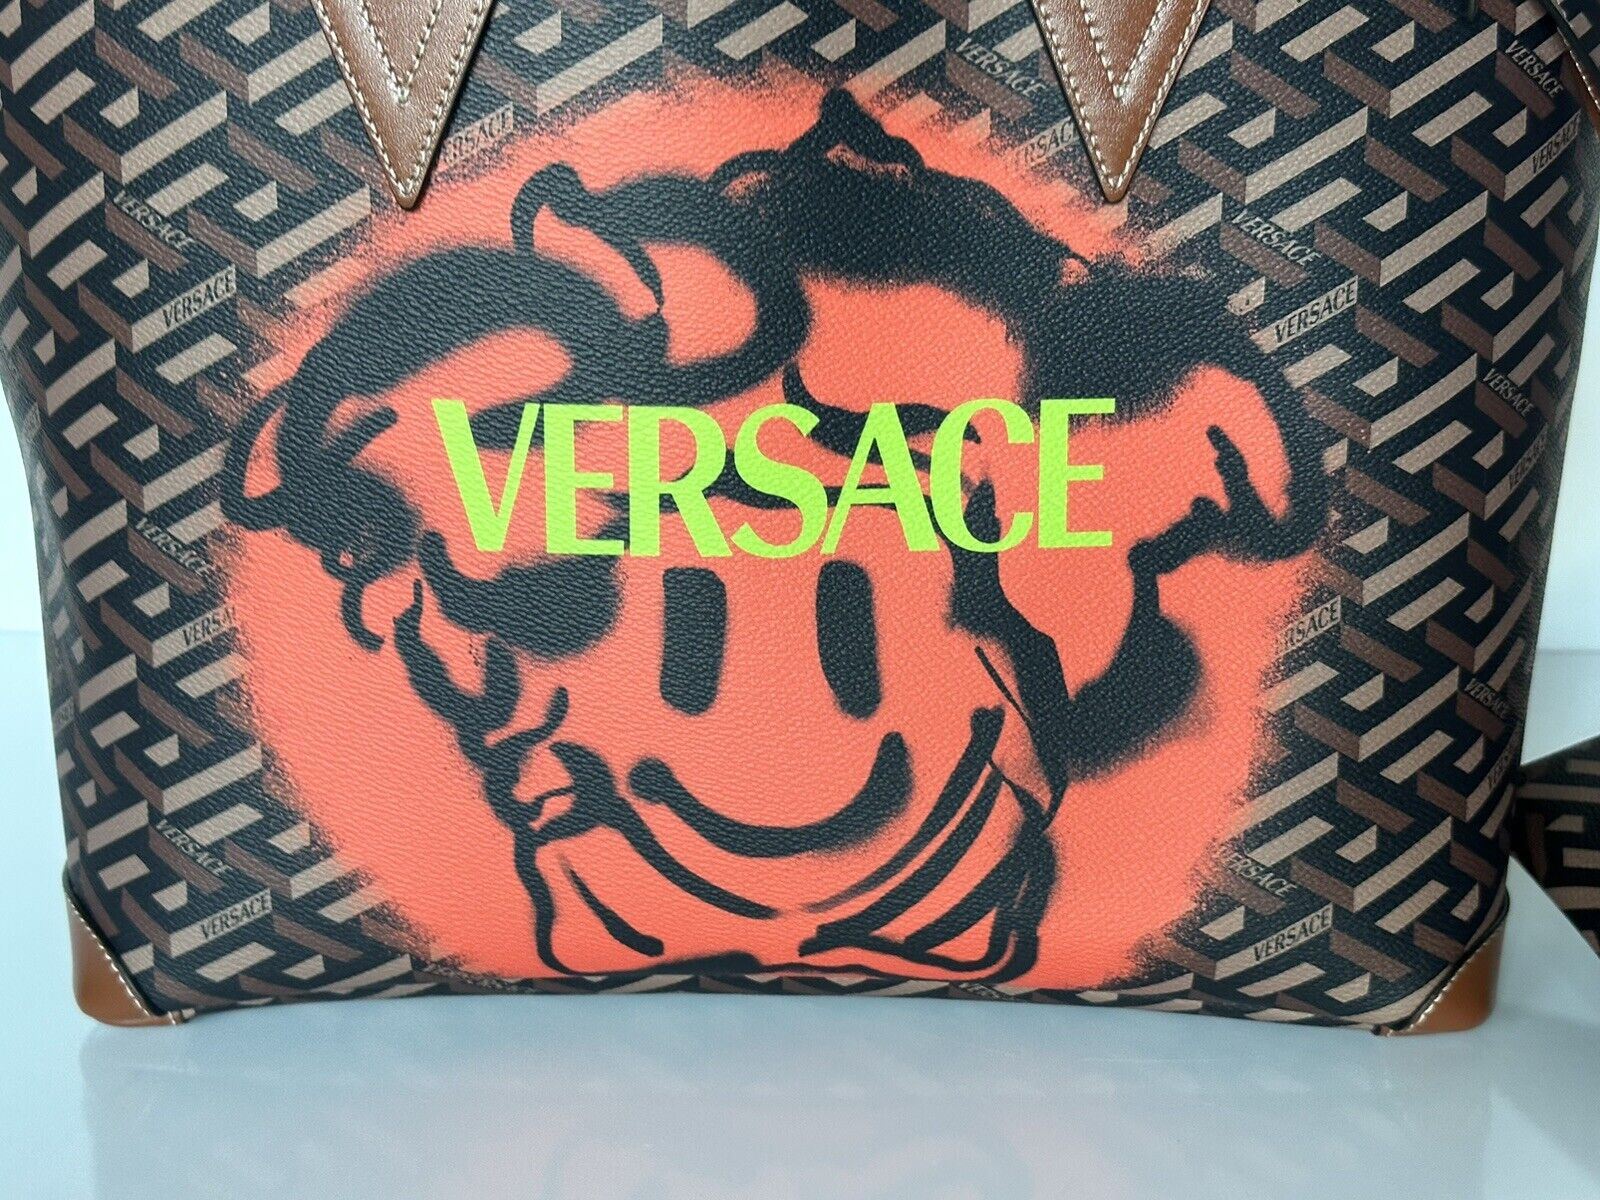 Neu mit Etikett Versace Greca Signature Smiley Medusa Tragetasche Abnehmbare Tasche IT 1008109